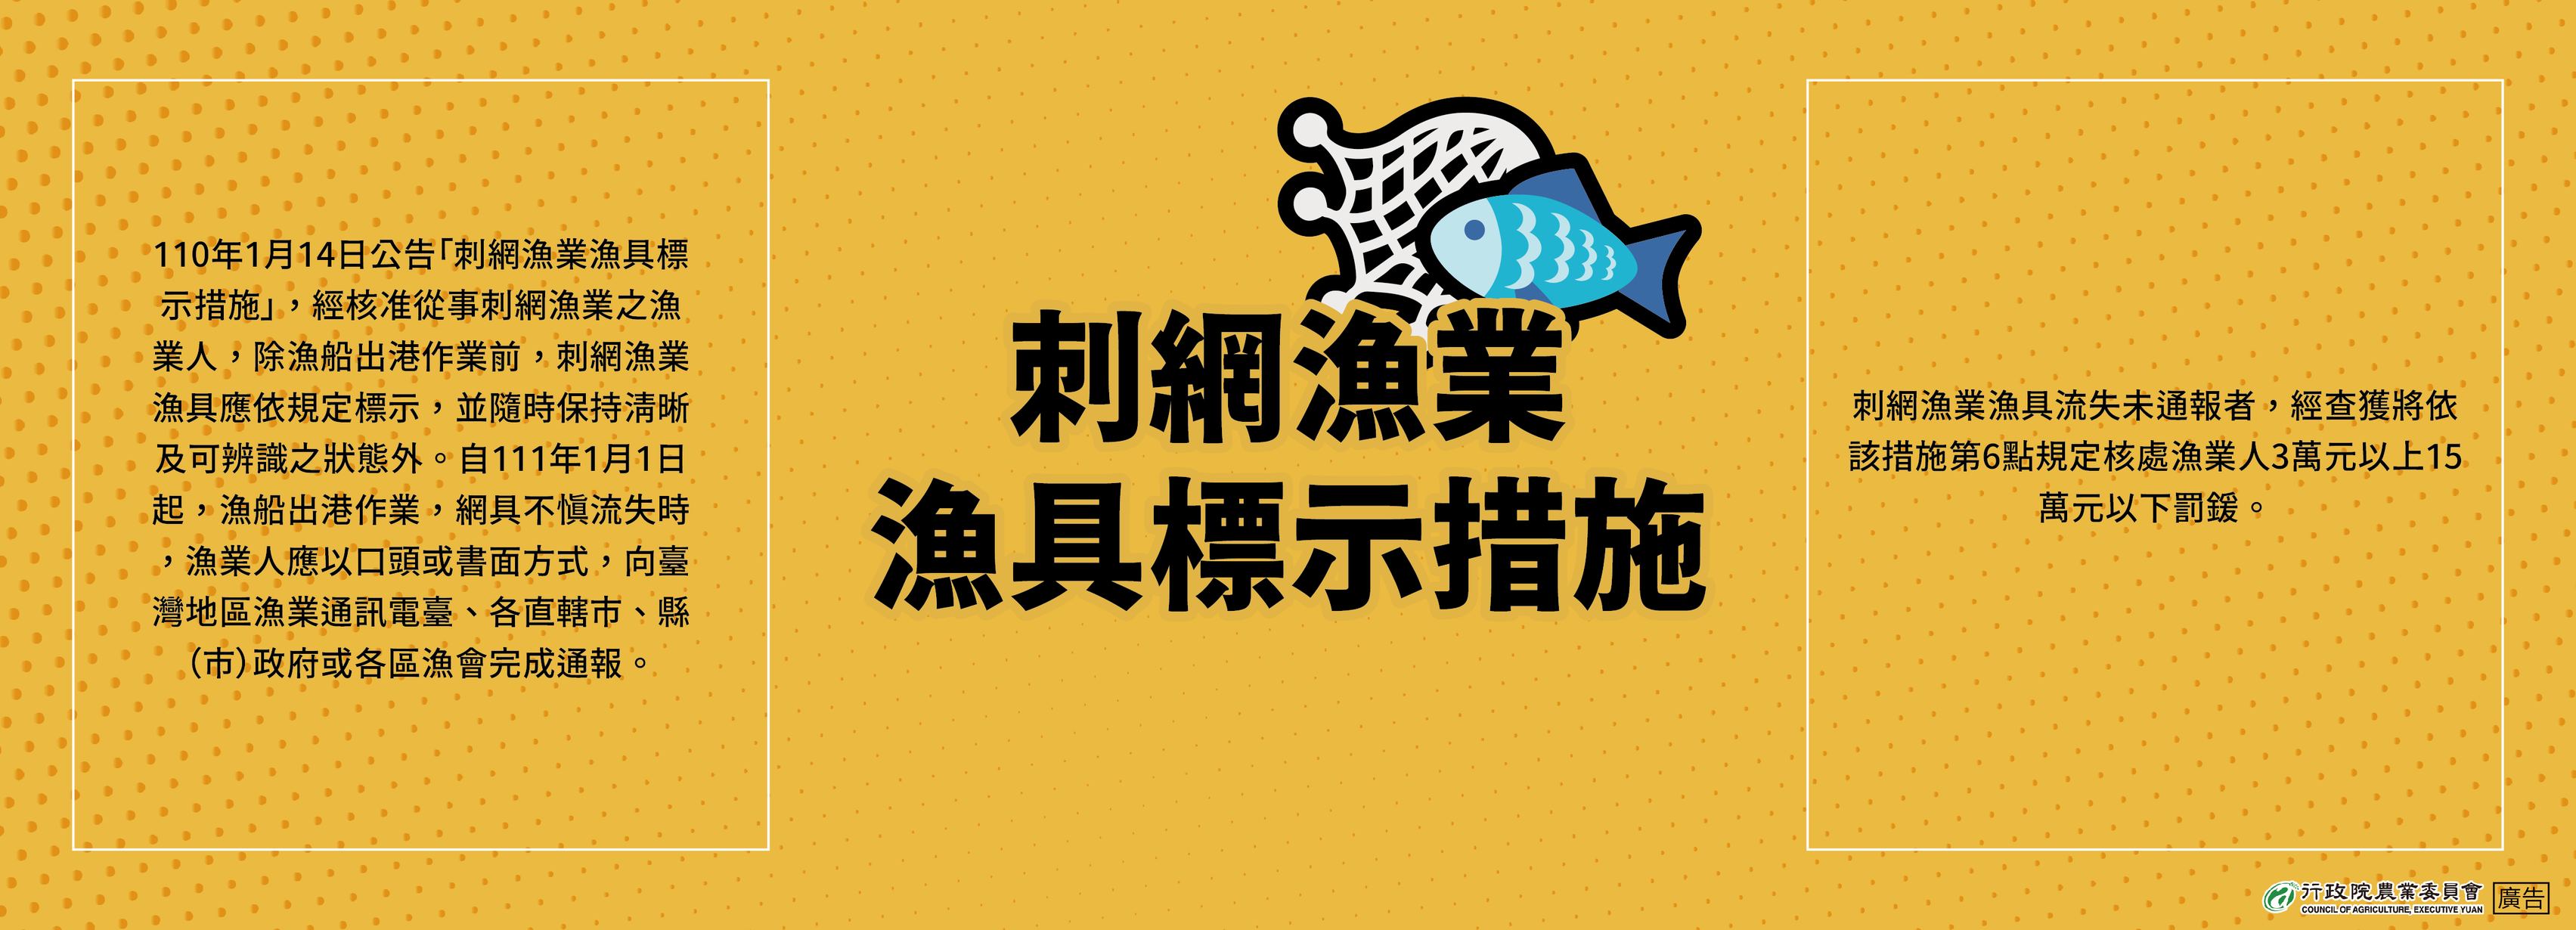 刺網漁業漁具標示措施